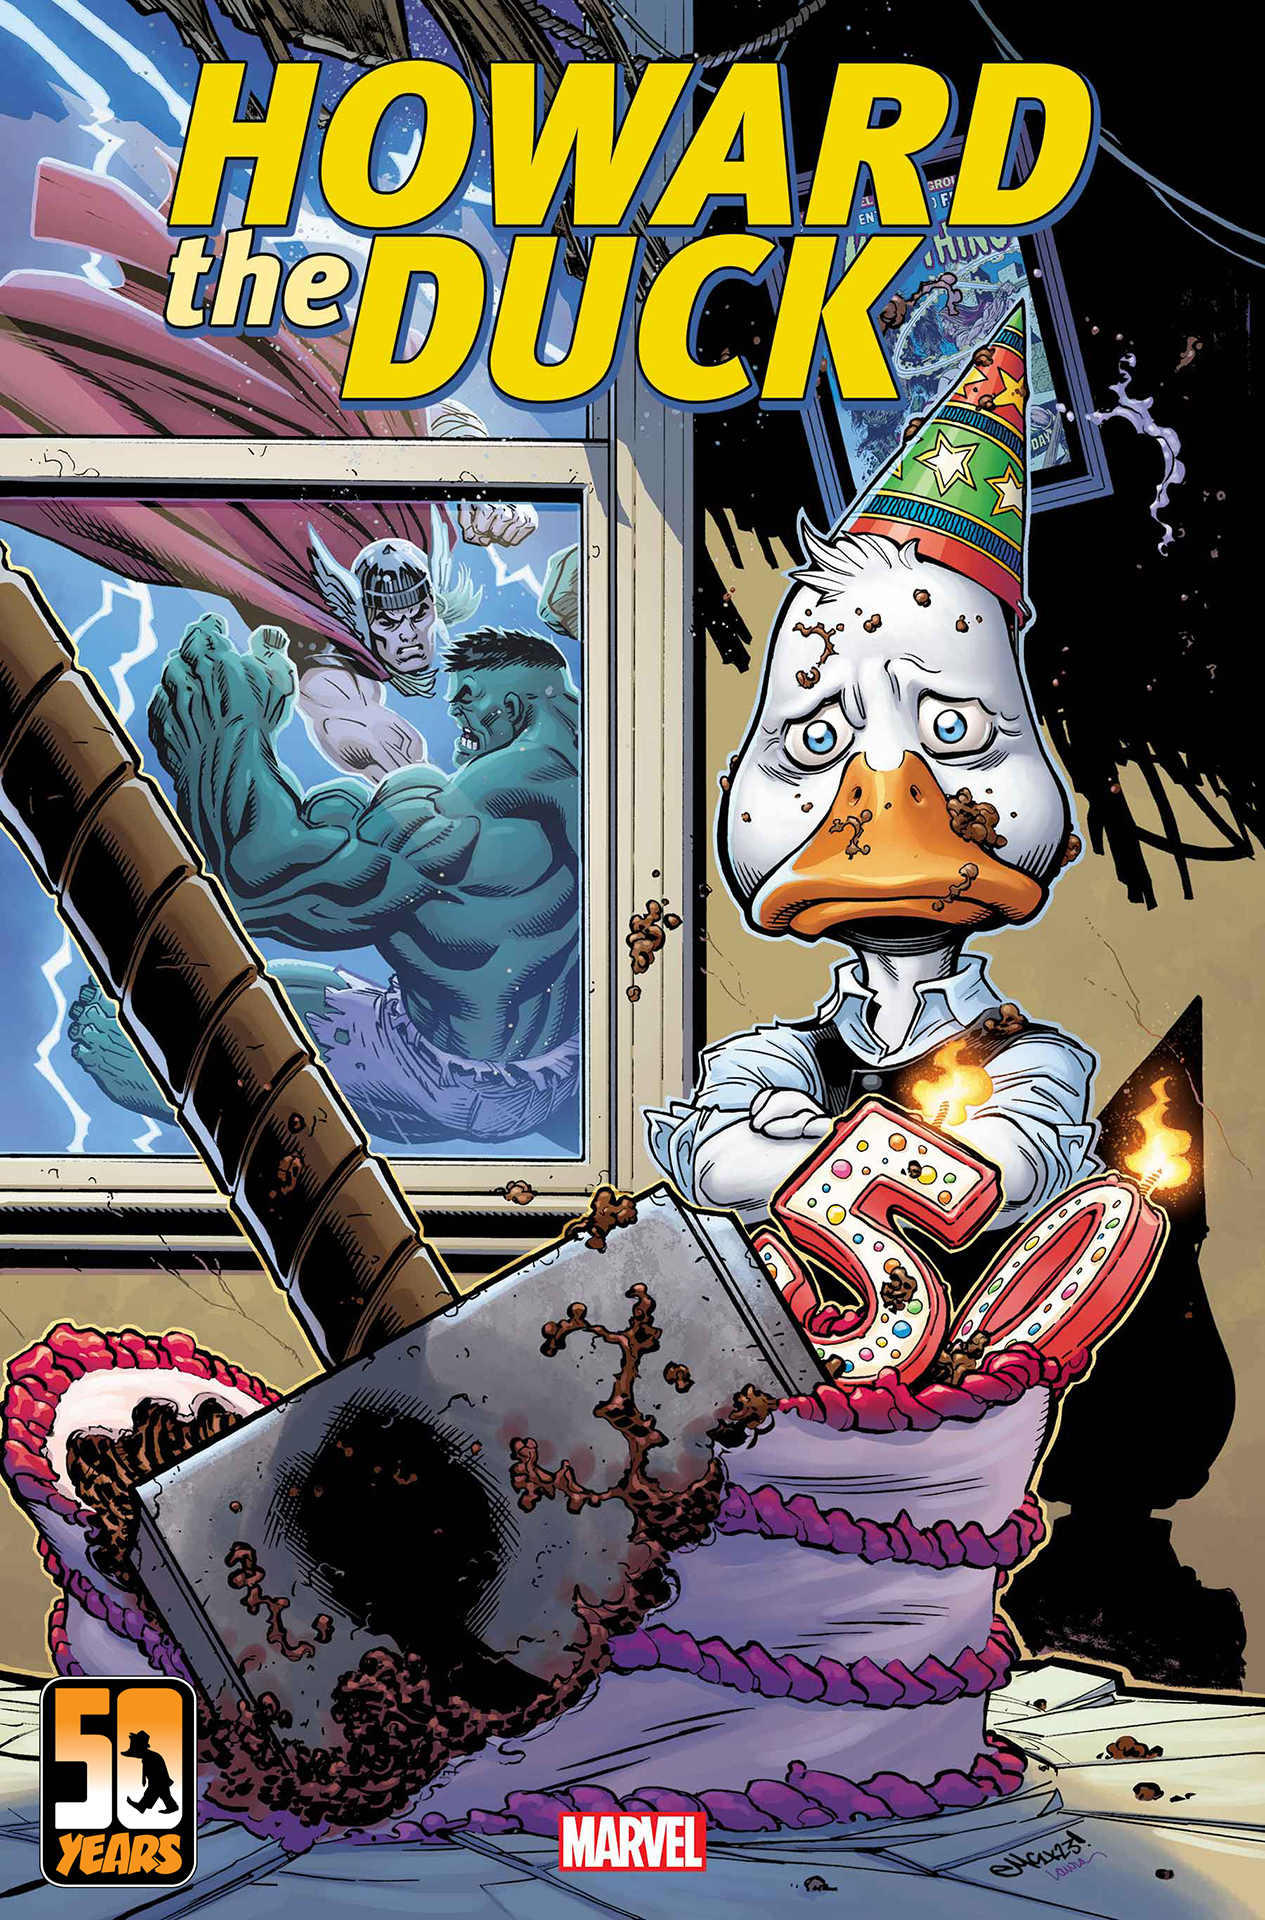 Portada de Howard the Duck #1 por Ed McGuiness